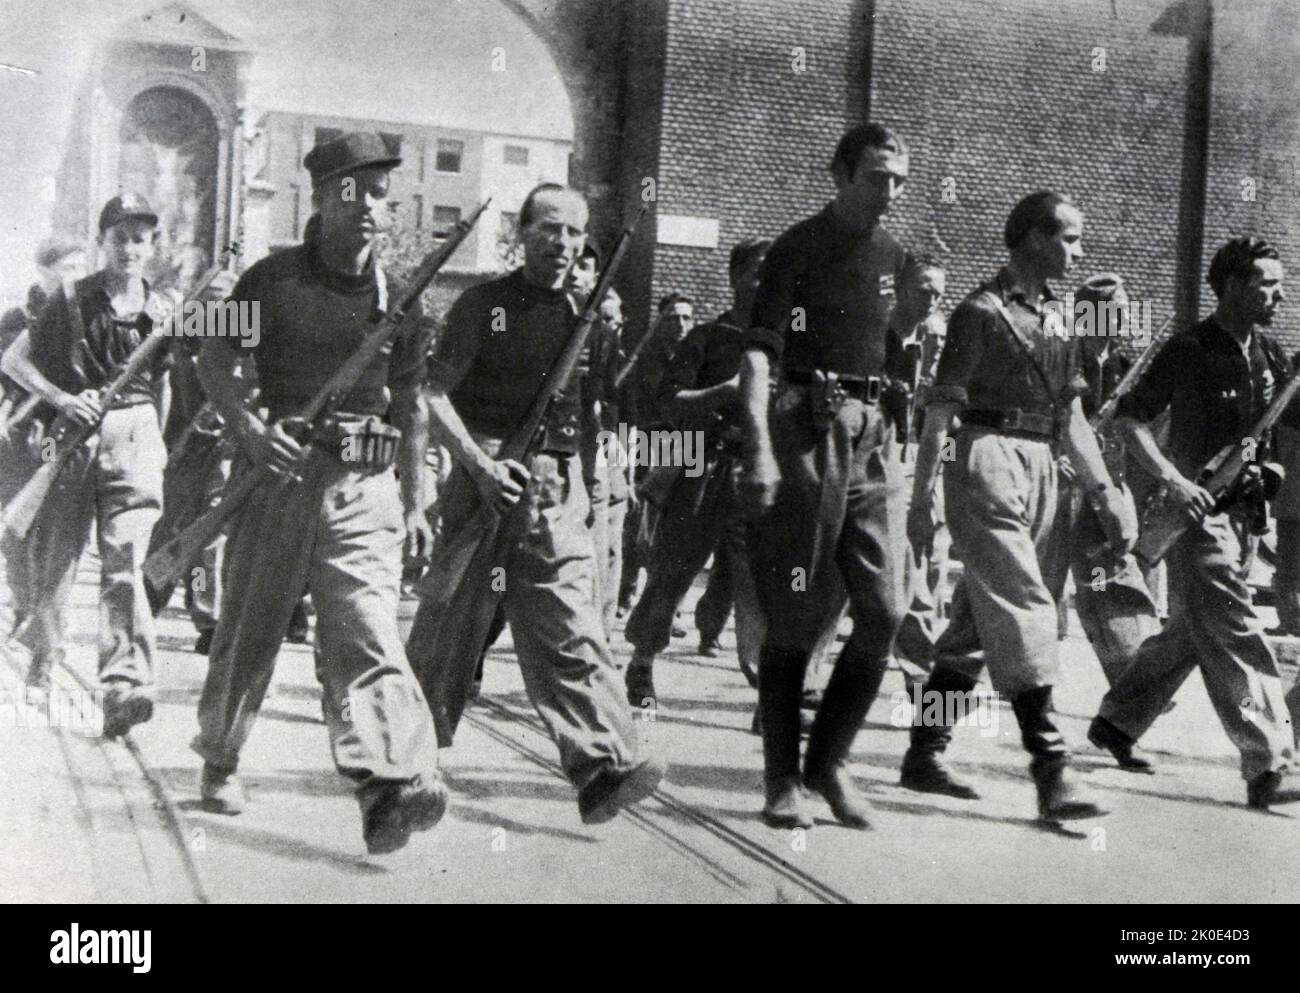 Corps auxiliaire des escadrons d'action des chemises noires, connu sous le nom de Brigades noires (Brigate Nere), un groupe paramilitaire fasciste, organisé et dirigé par le Parti fasciste républicain (Partito Fascista Repubblicano, PFR) opérant en République sociale italienne (dans le nord de l'Italie), pendant les dernières années de la Seconde Guerre mondiale, Et après la signature de l'armistice italien en 1943. Banque D'Images